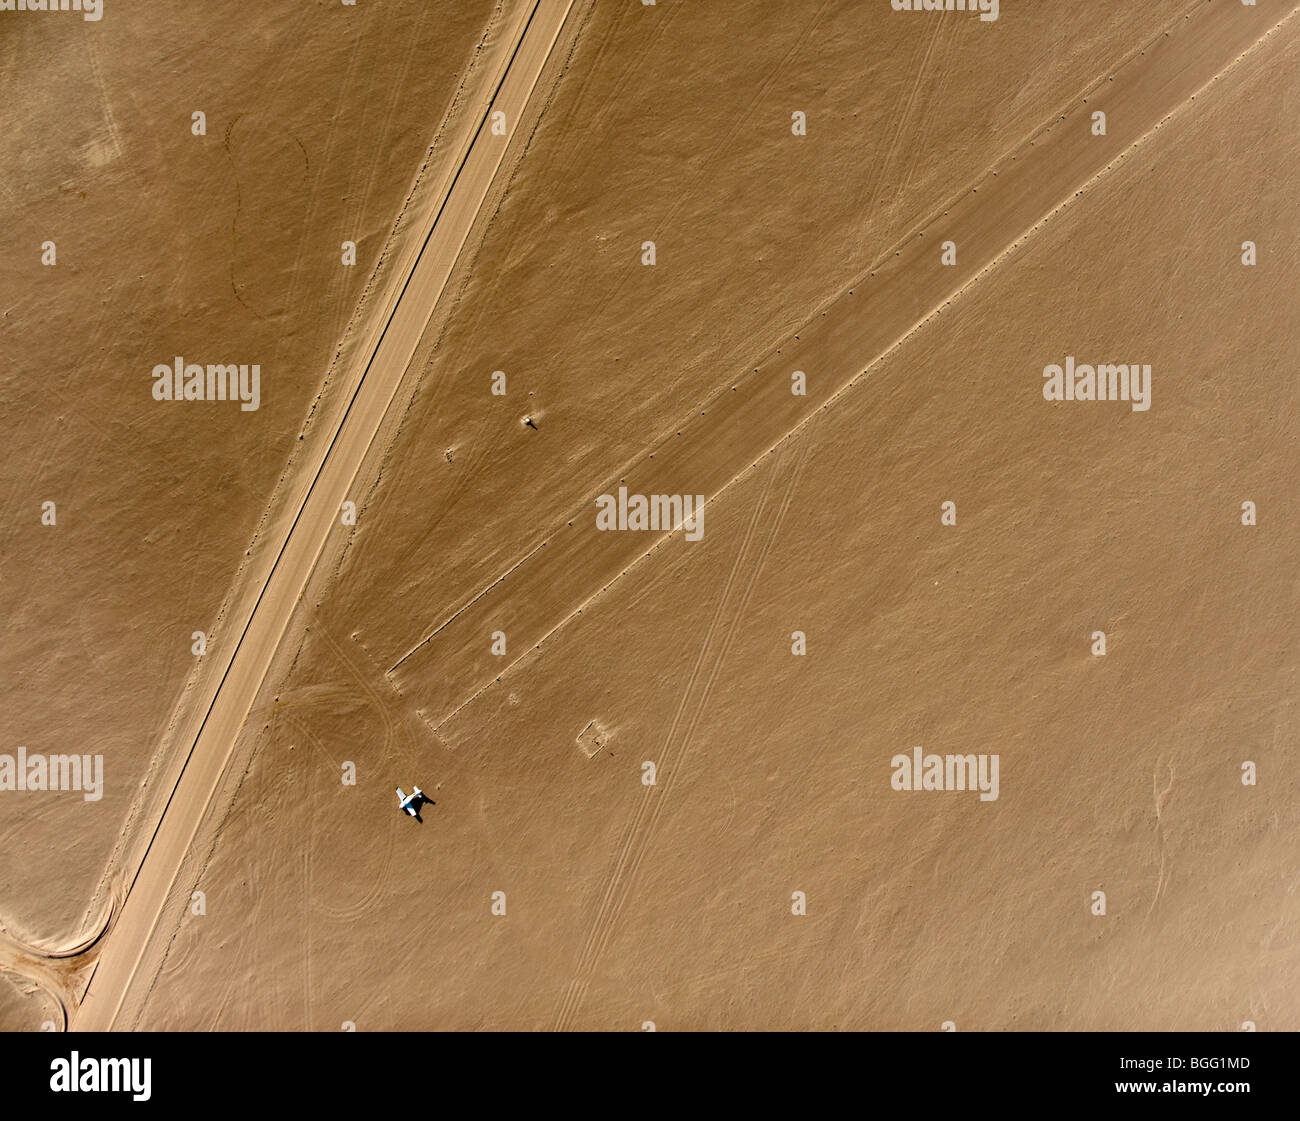 Desert airstrip, Namibia Stock Photo